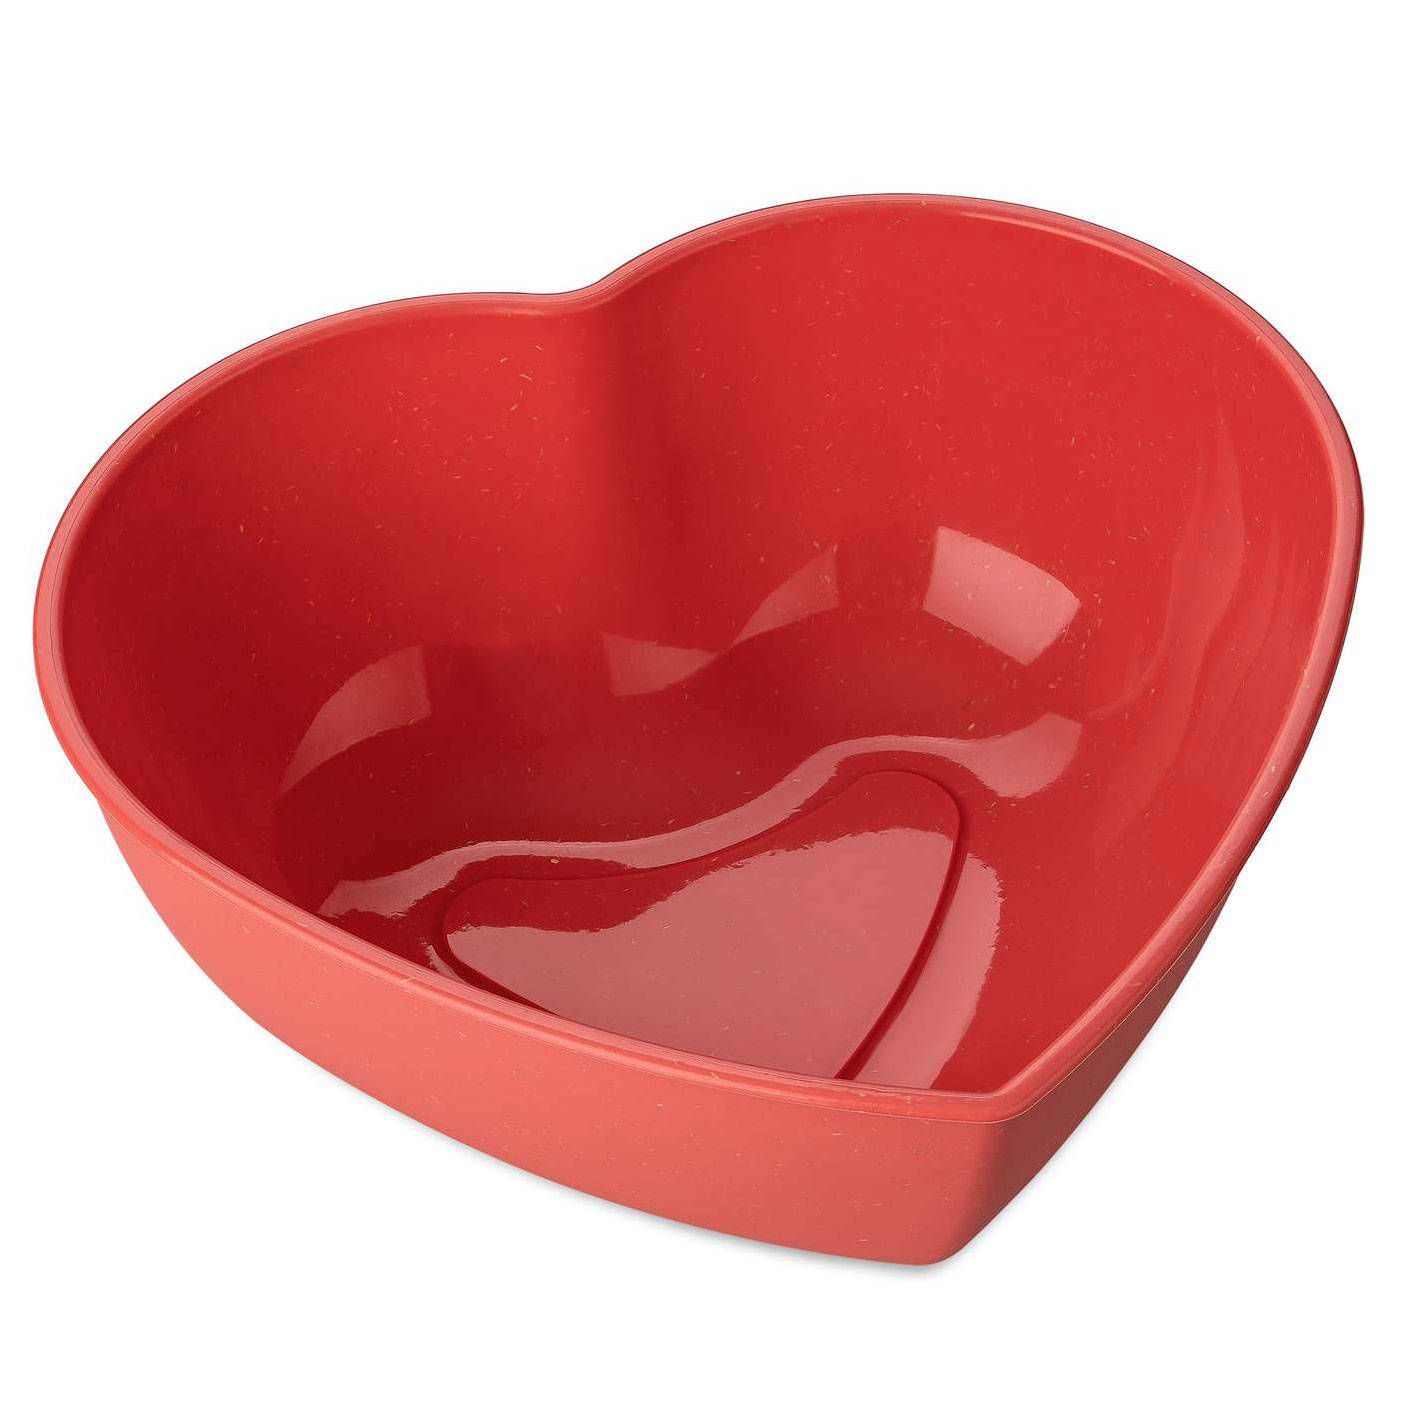 Koziol Kuchyňská miska ve tvaru srdce HERZ, organic nature, červená - EDAXO.CZ s.r.o.